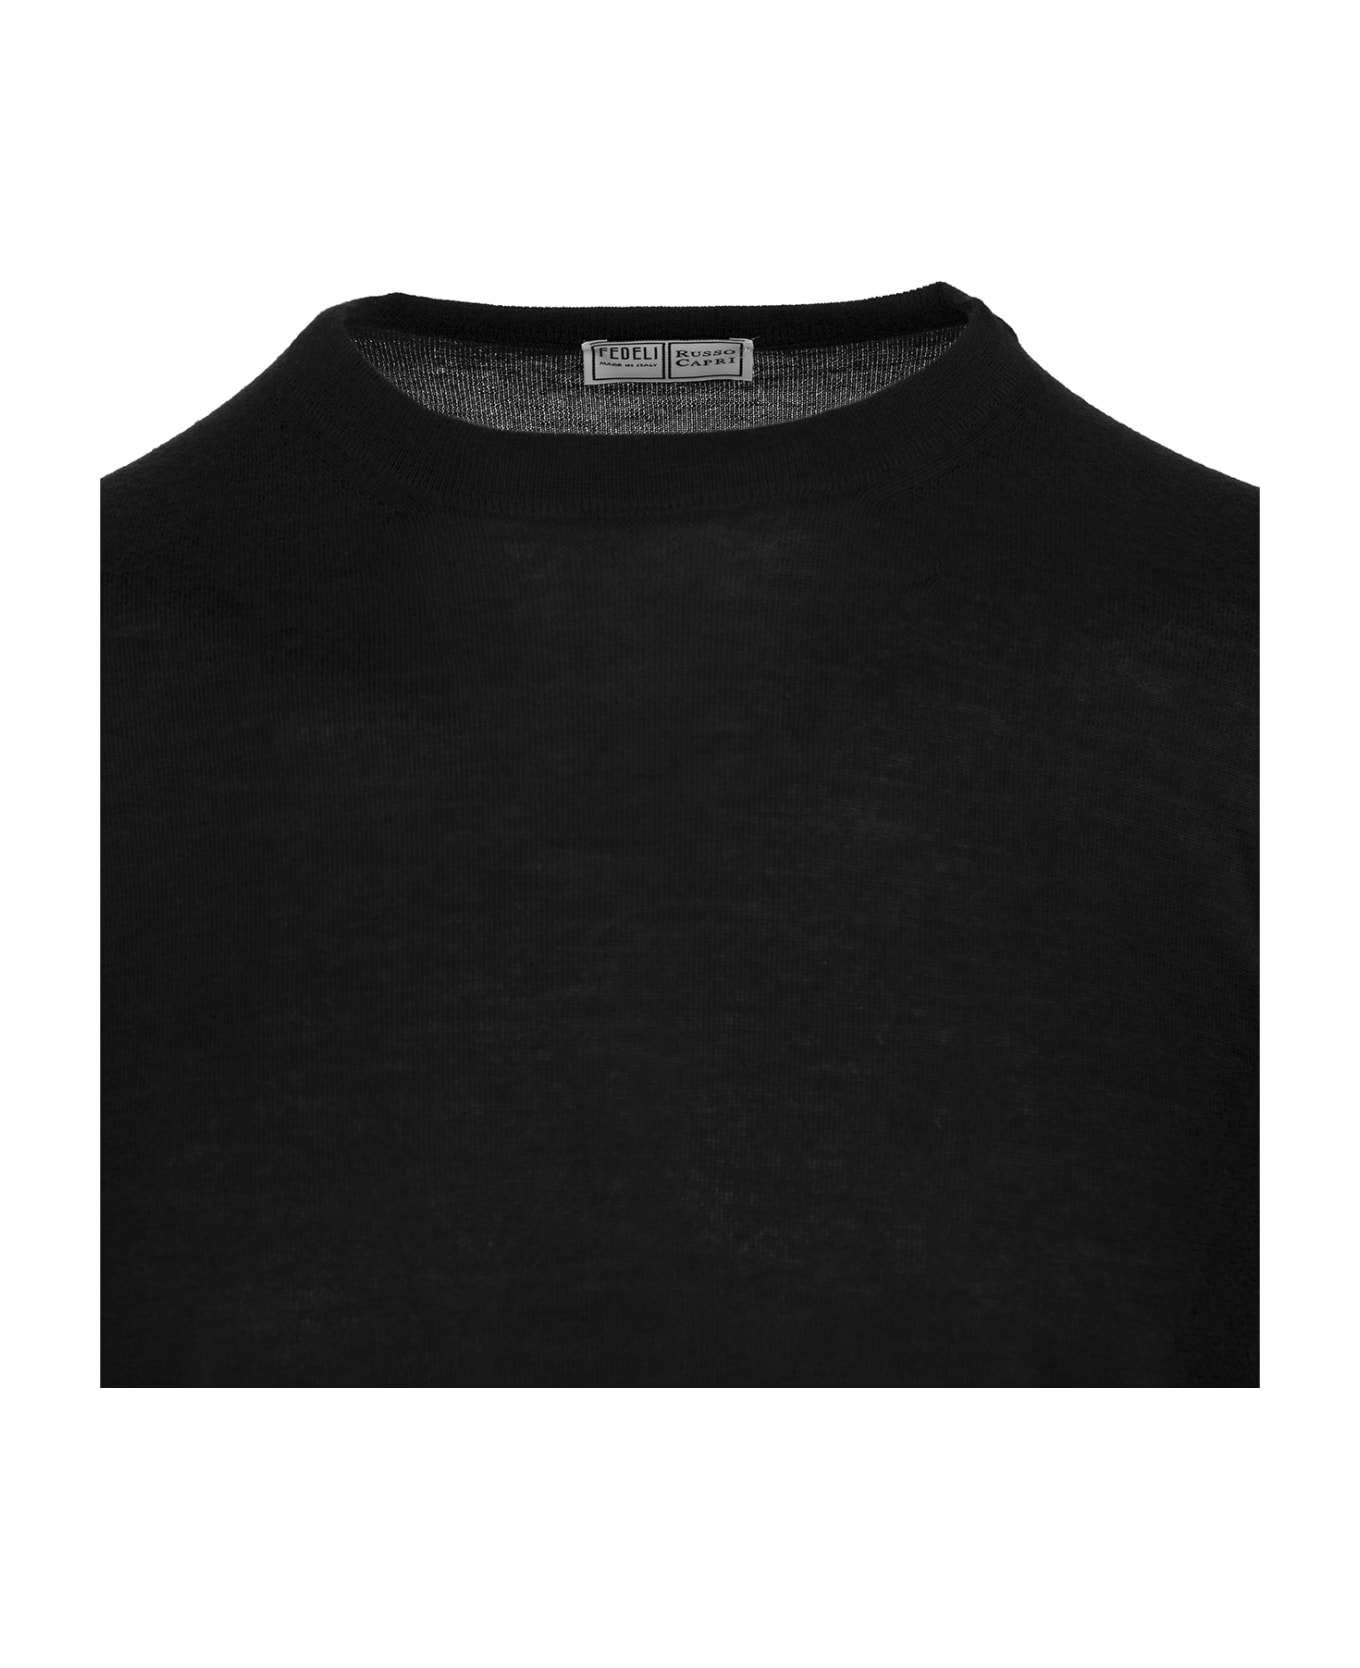 Fedeli Man Crew Neck Pullover In Black Cashmere - Black